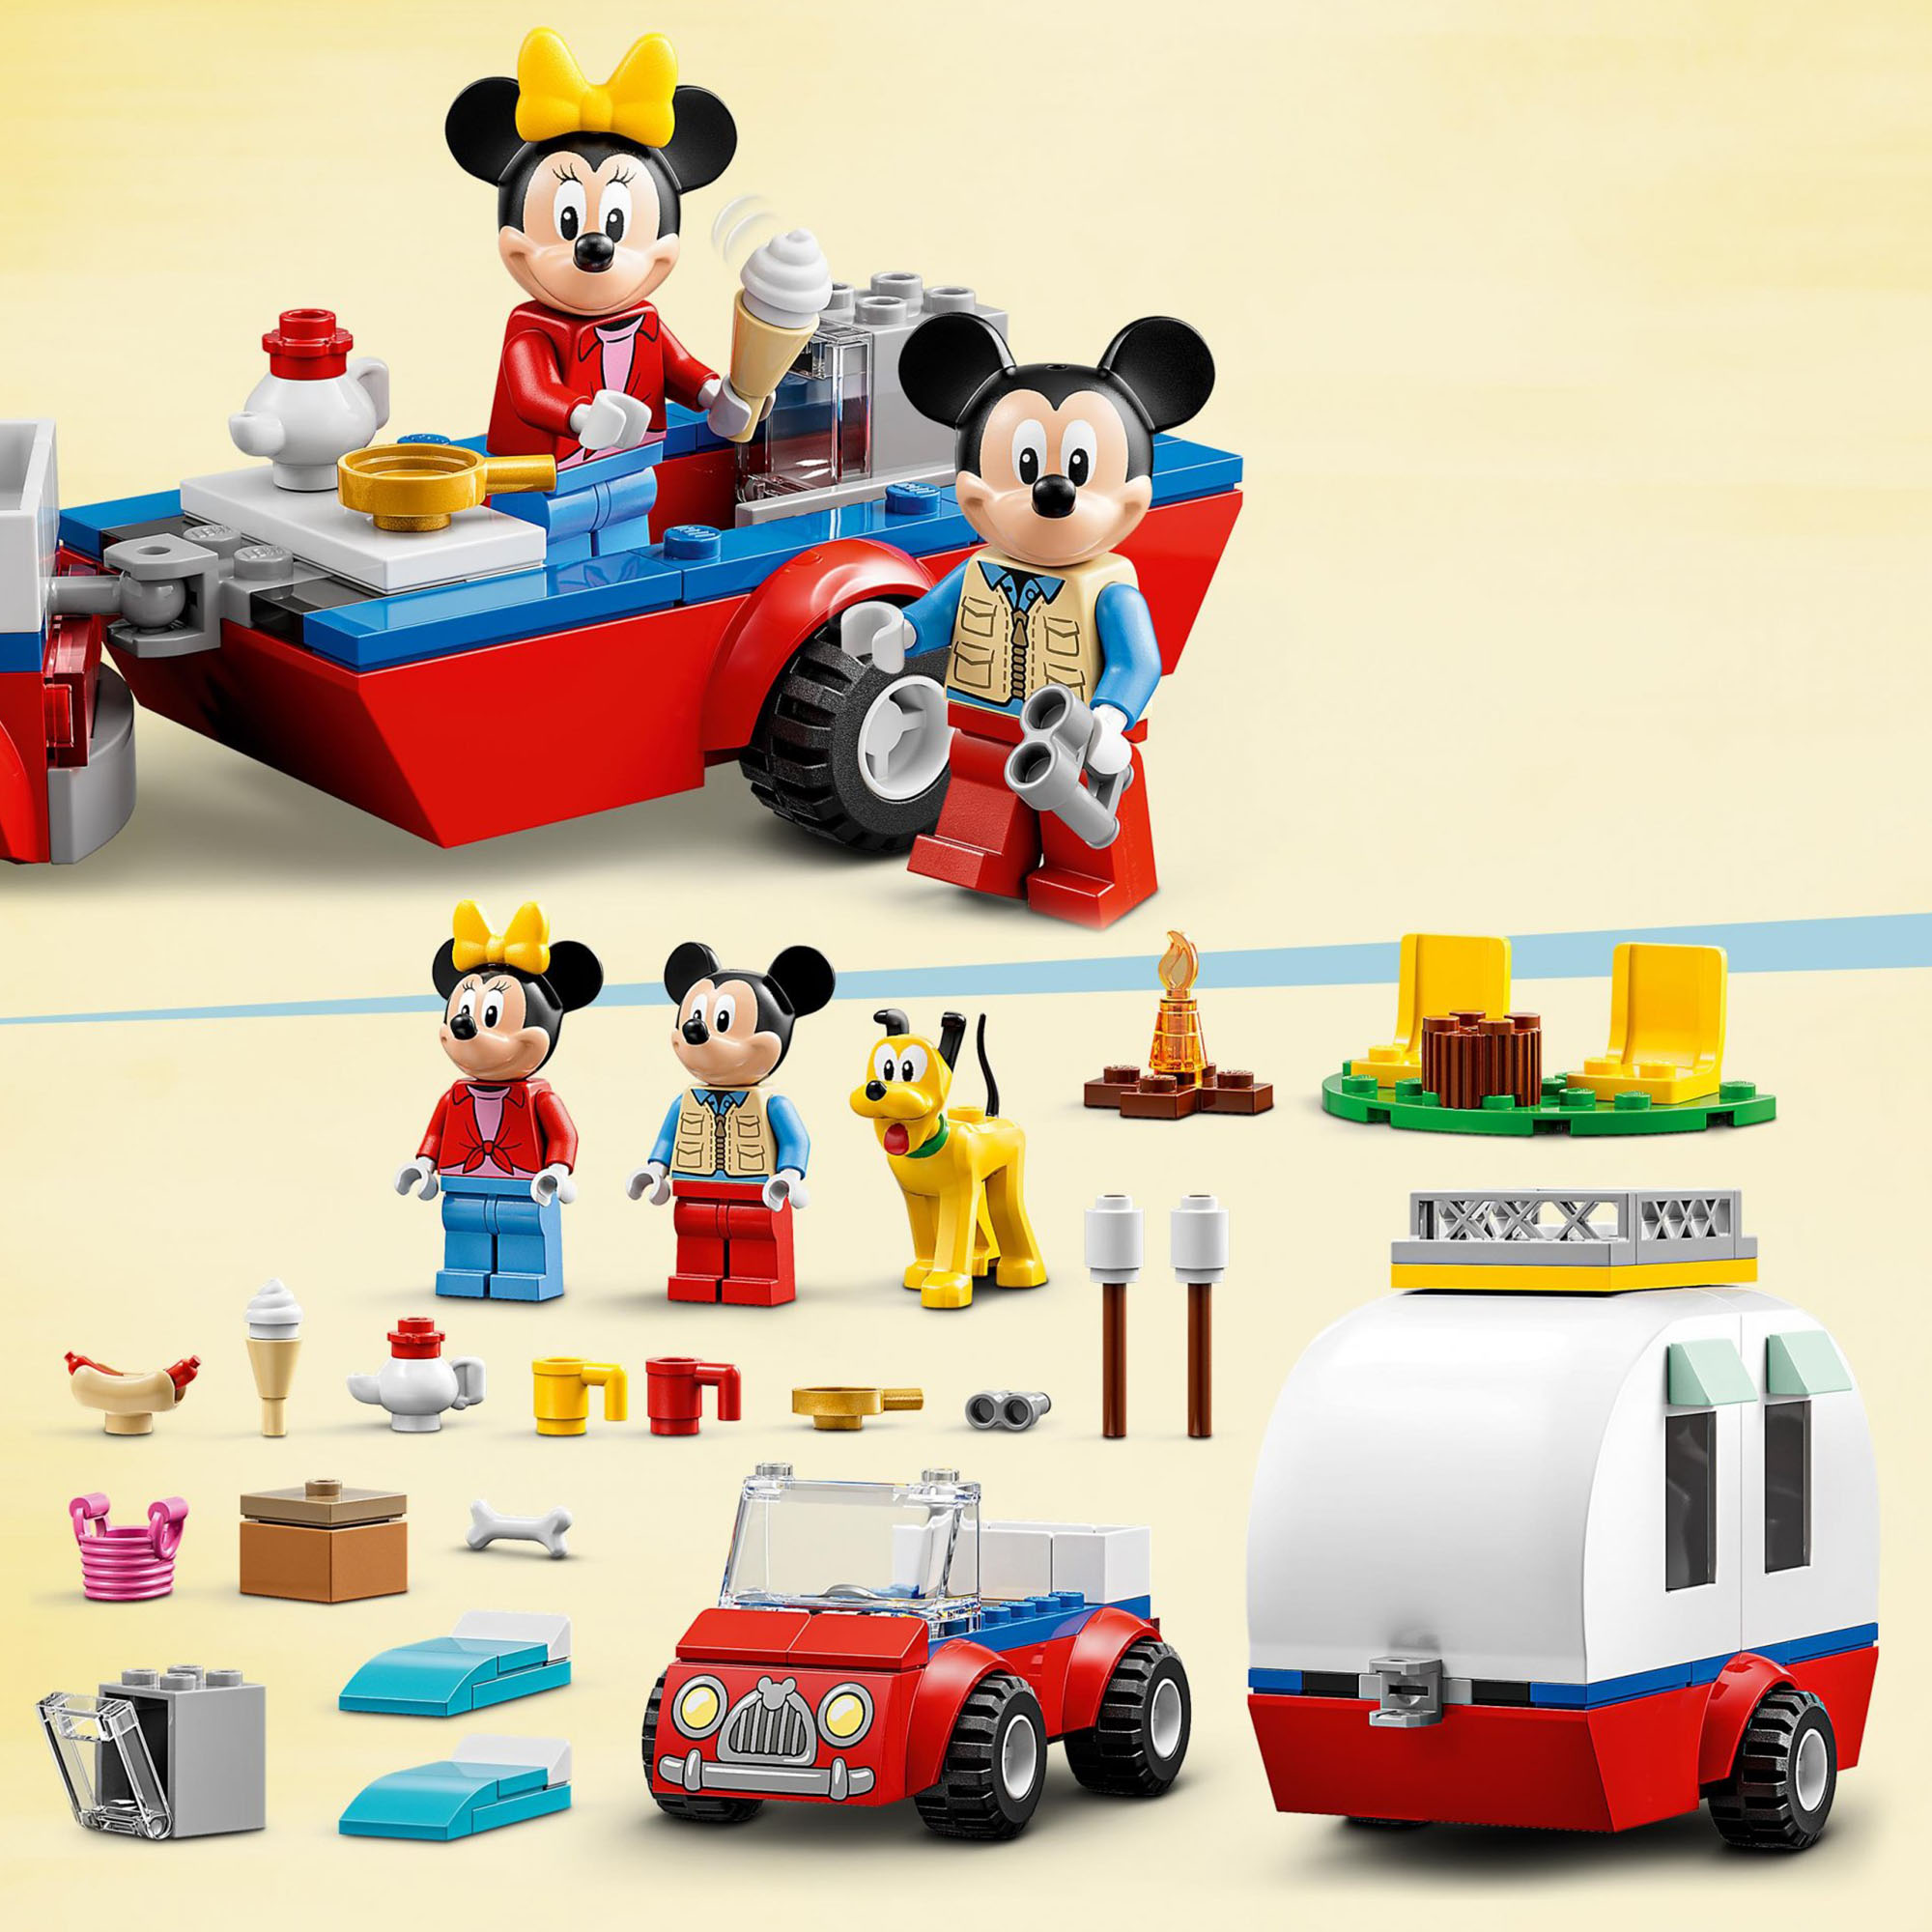 LEGO Disney Topolino e Amici Vacanza in Campeggio con Topolino e Minnie, con Plu 10777, , large